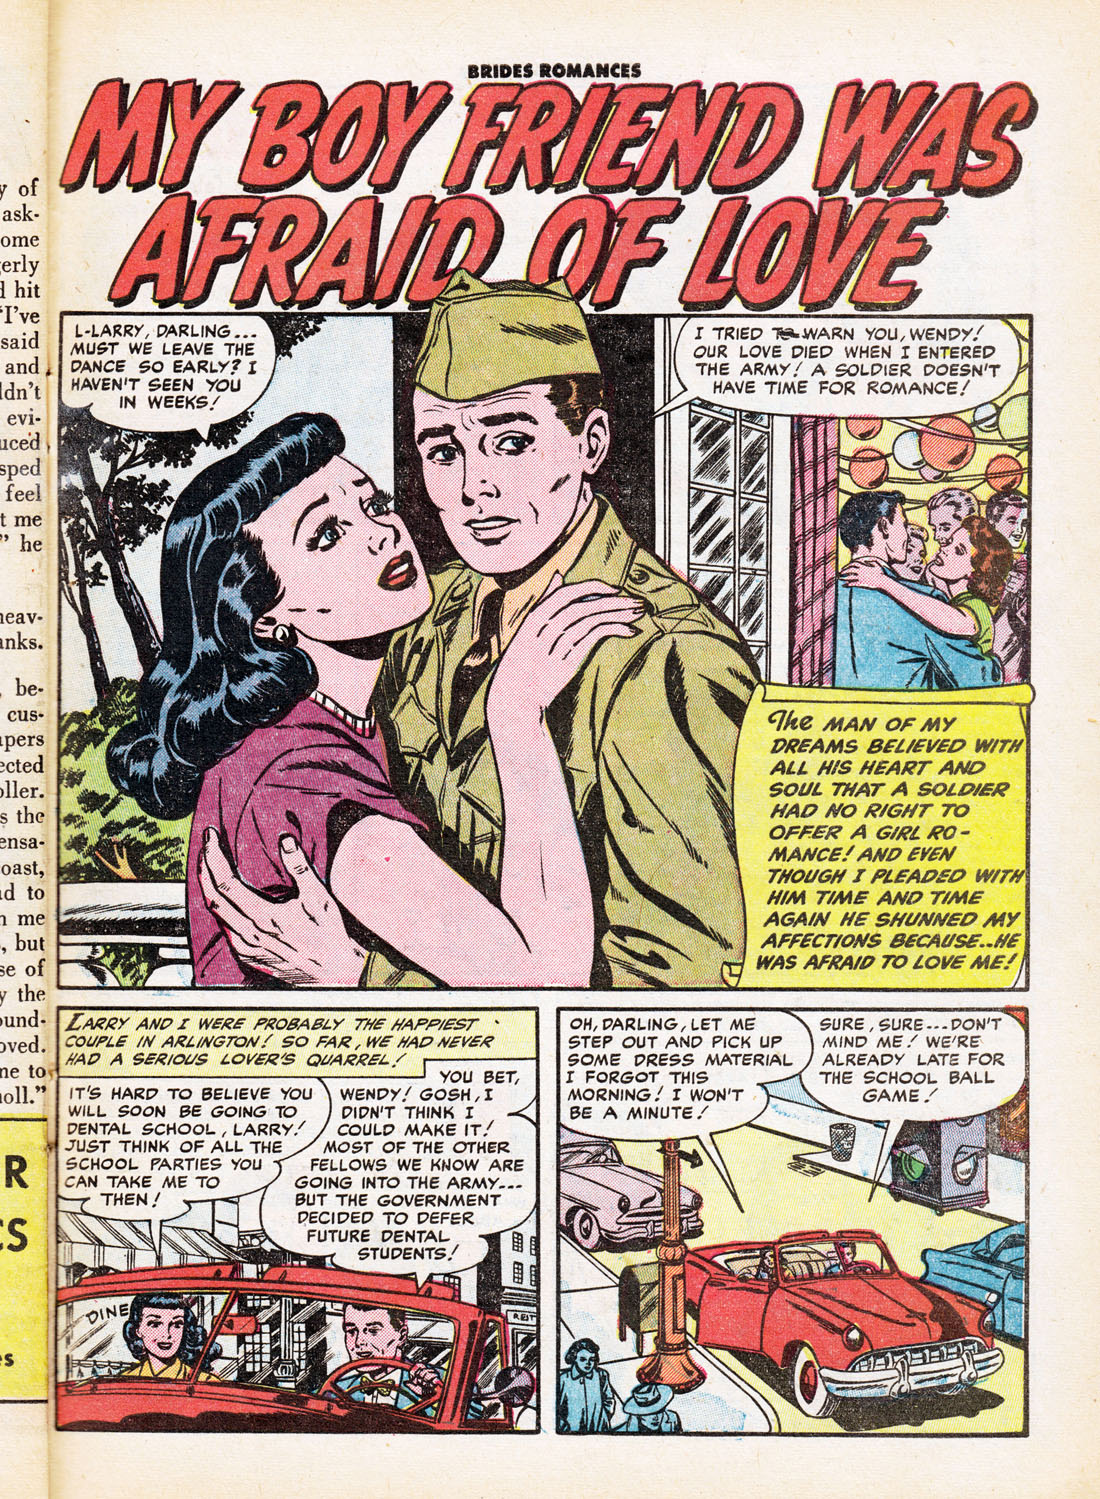 Read online Brides Romances comic -  Issue #6 - 27